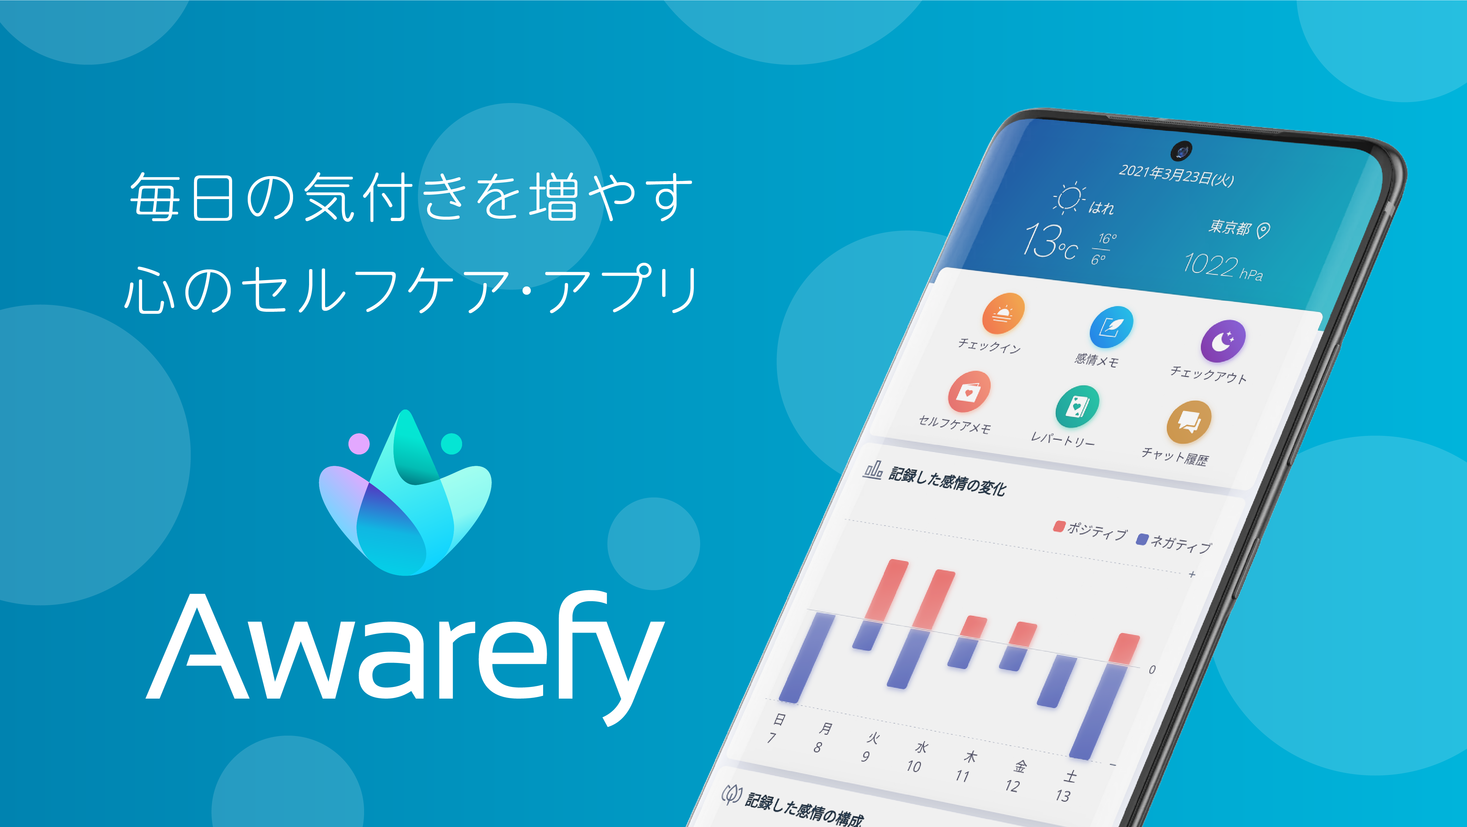 心のセルフケア・トレーニングアプリAwarefy(アウェアファイ)を運営するHakaliが、ANRIからシードラウンドで1億円の資金調達を実施。